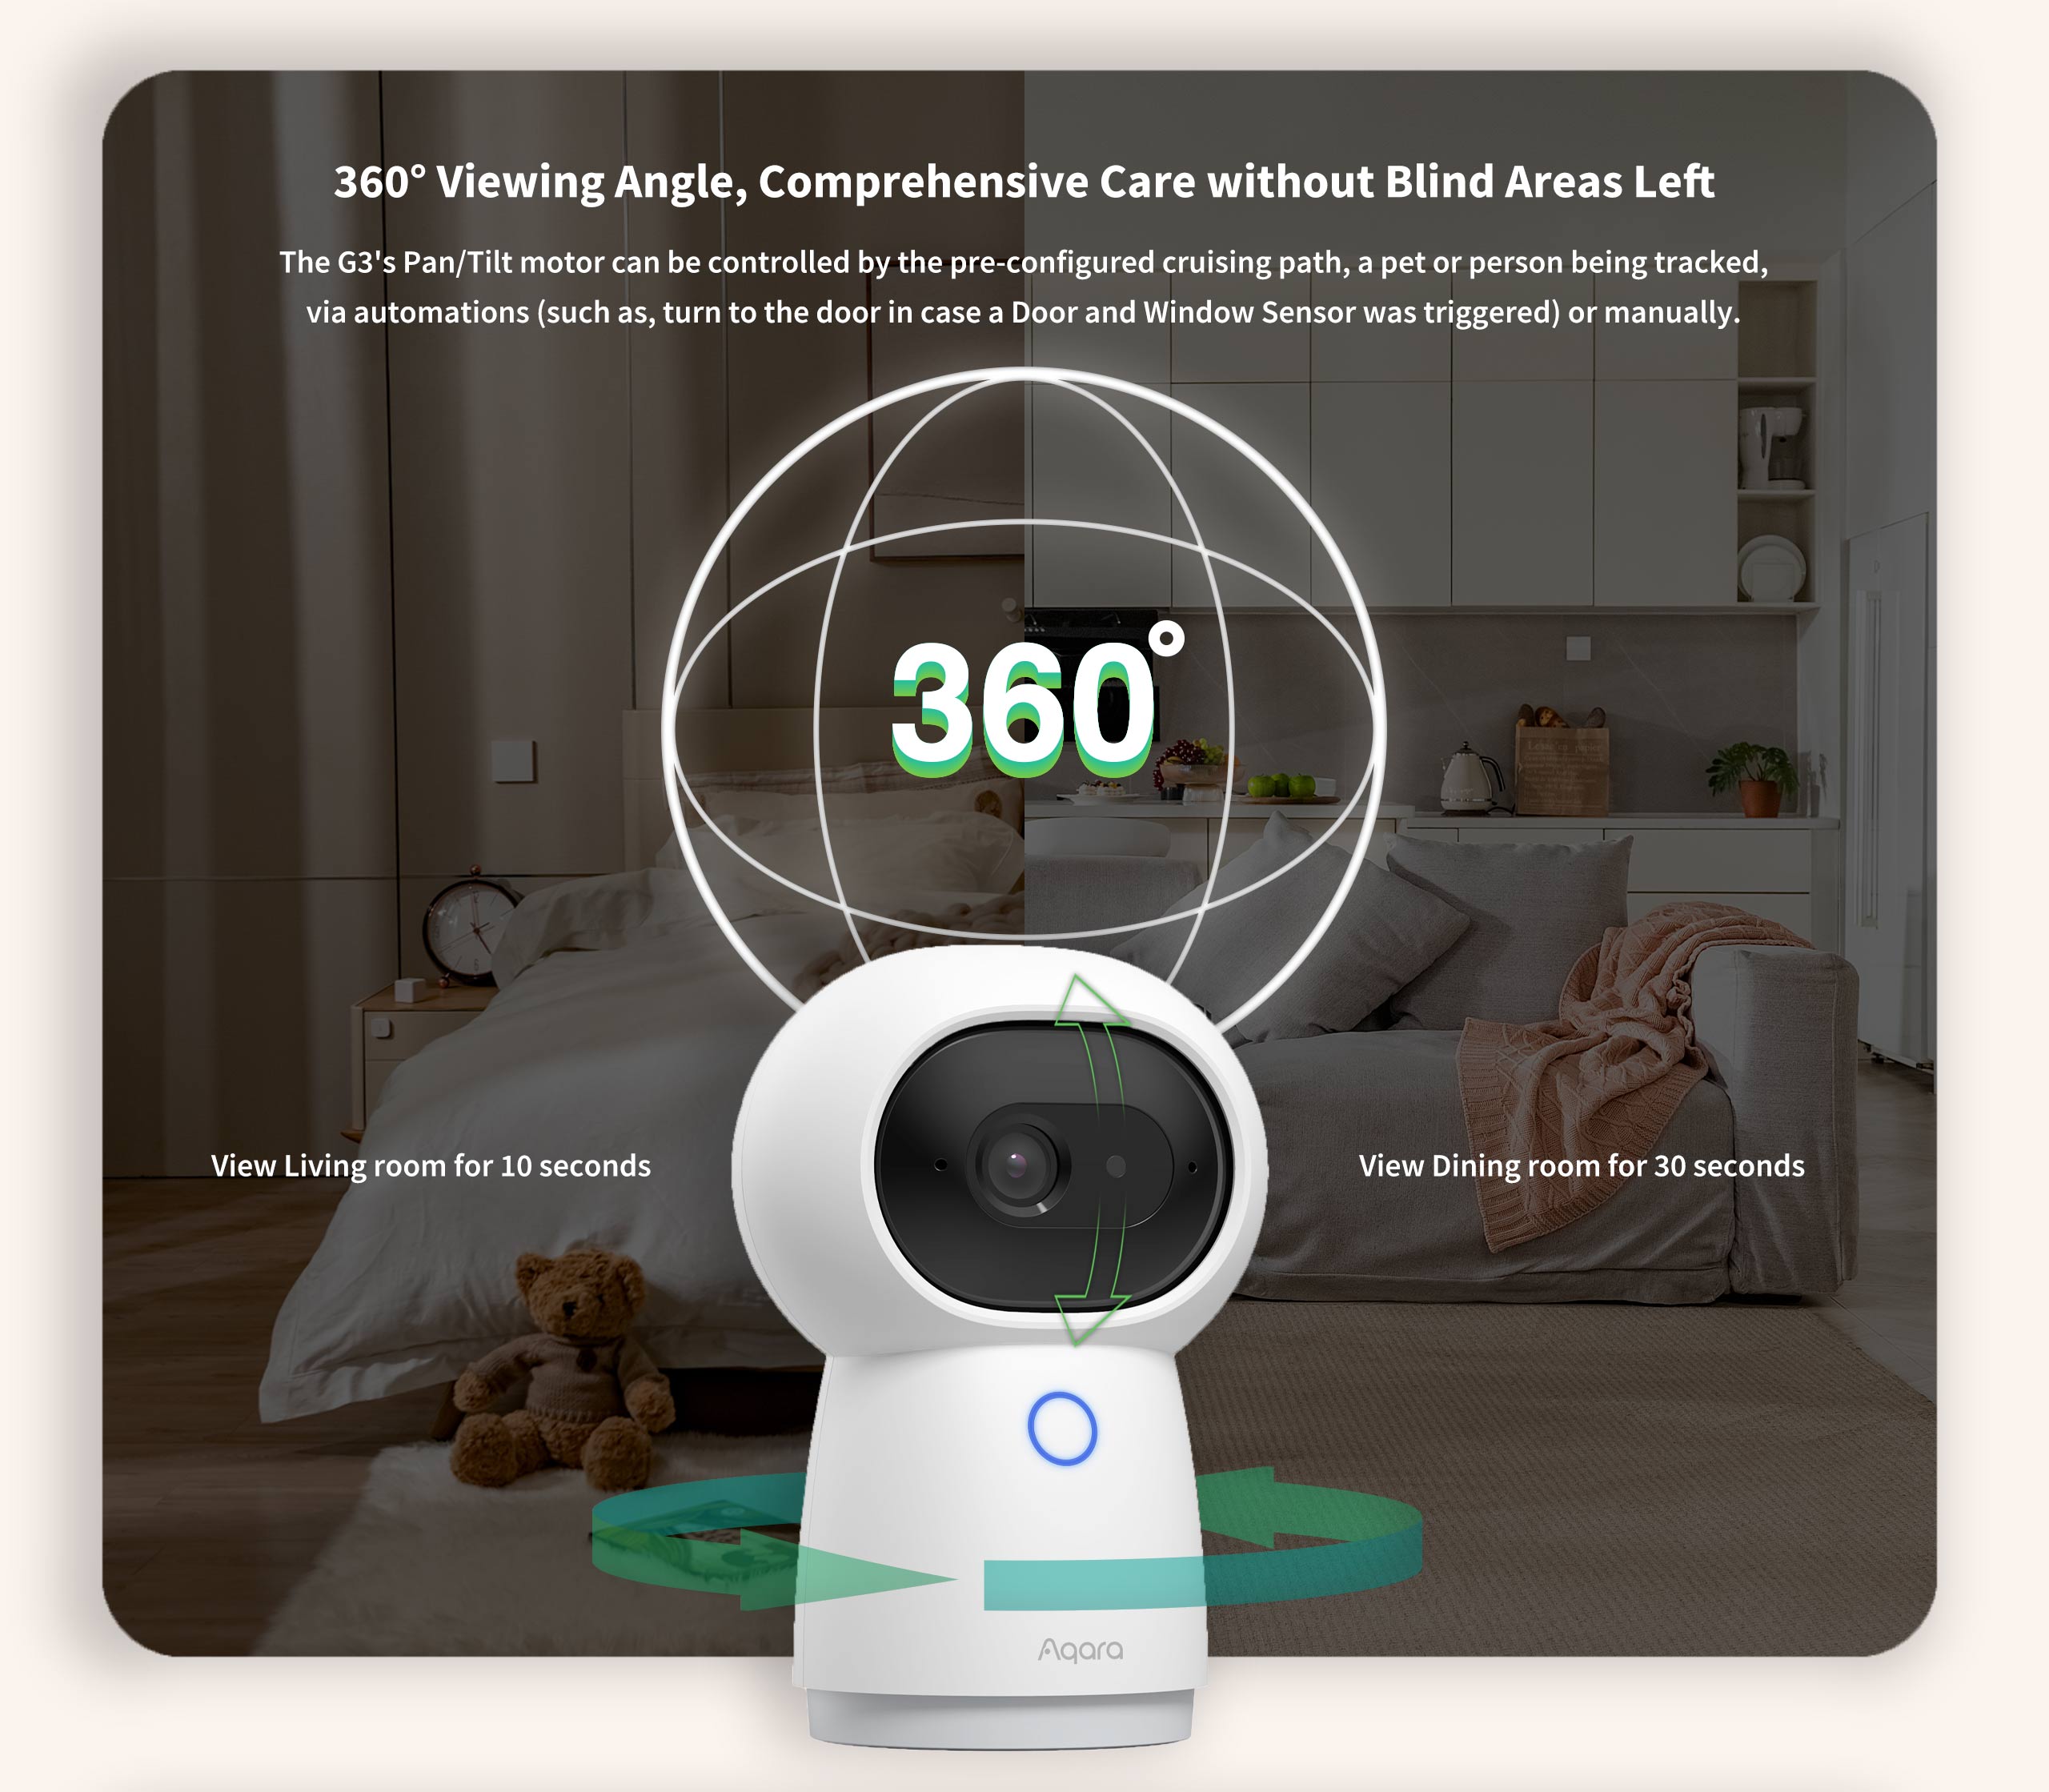 Camera Aqara G3 bản quốc tế, 2K, AI Tracking, hỗ trợ Apple HomeKit, tích hợp Hub Zigbee - Hàng Chính Hãng,